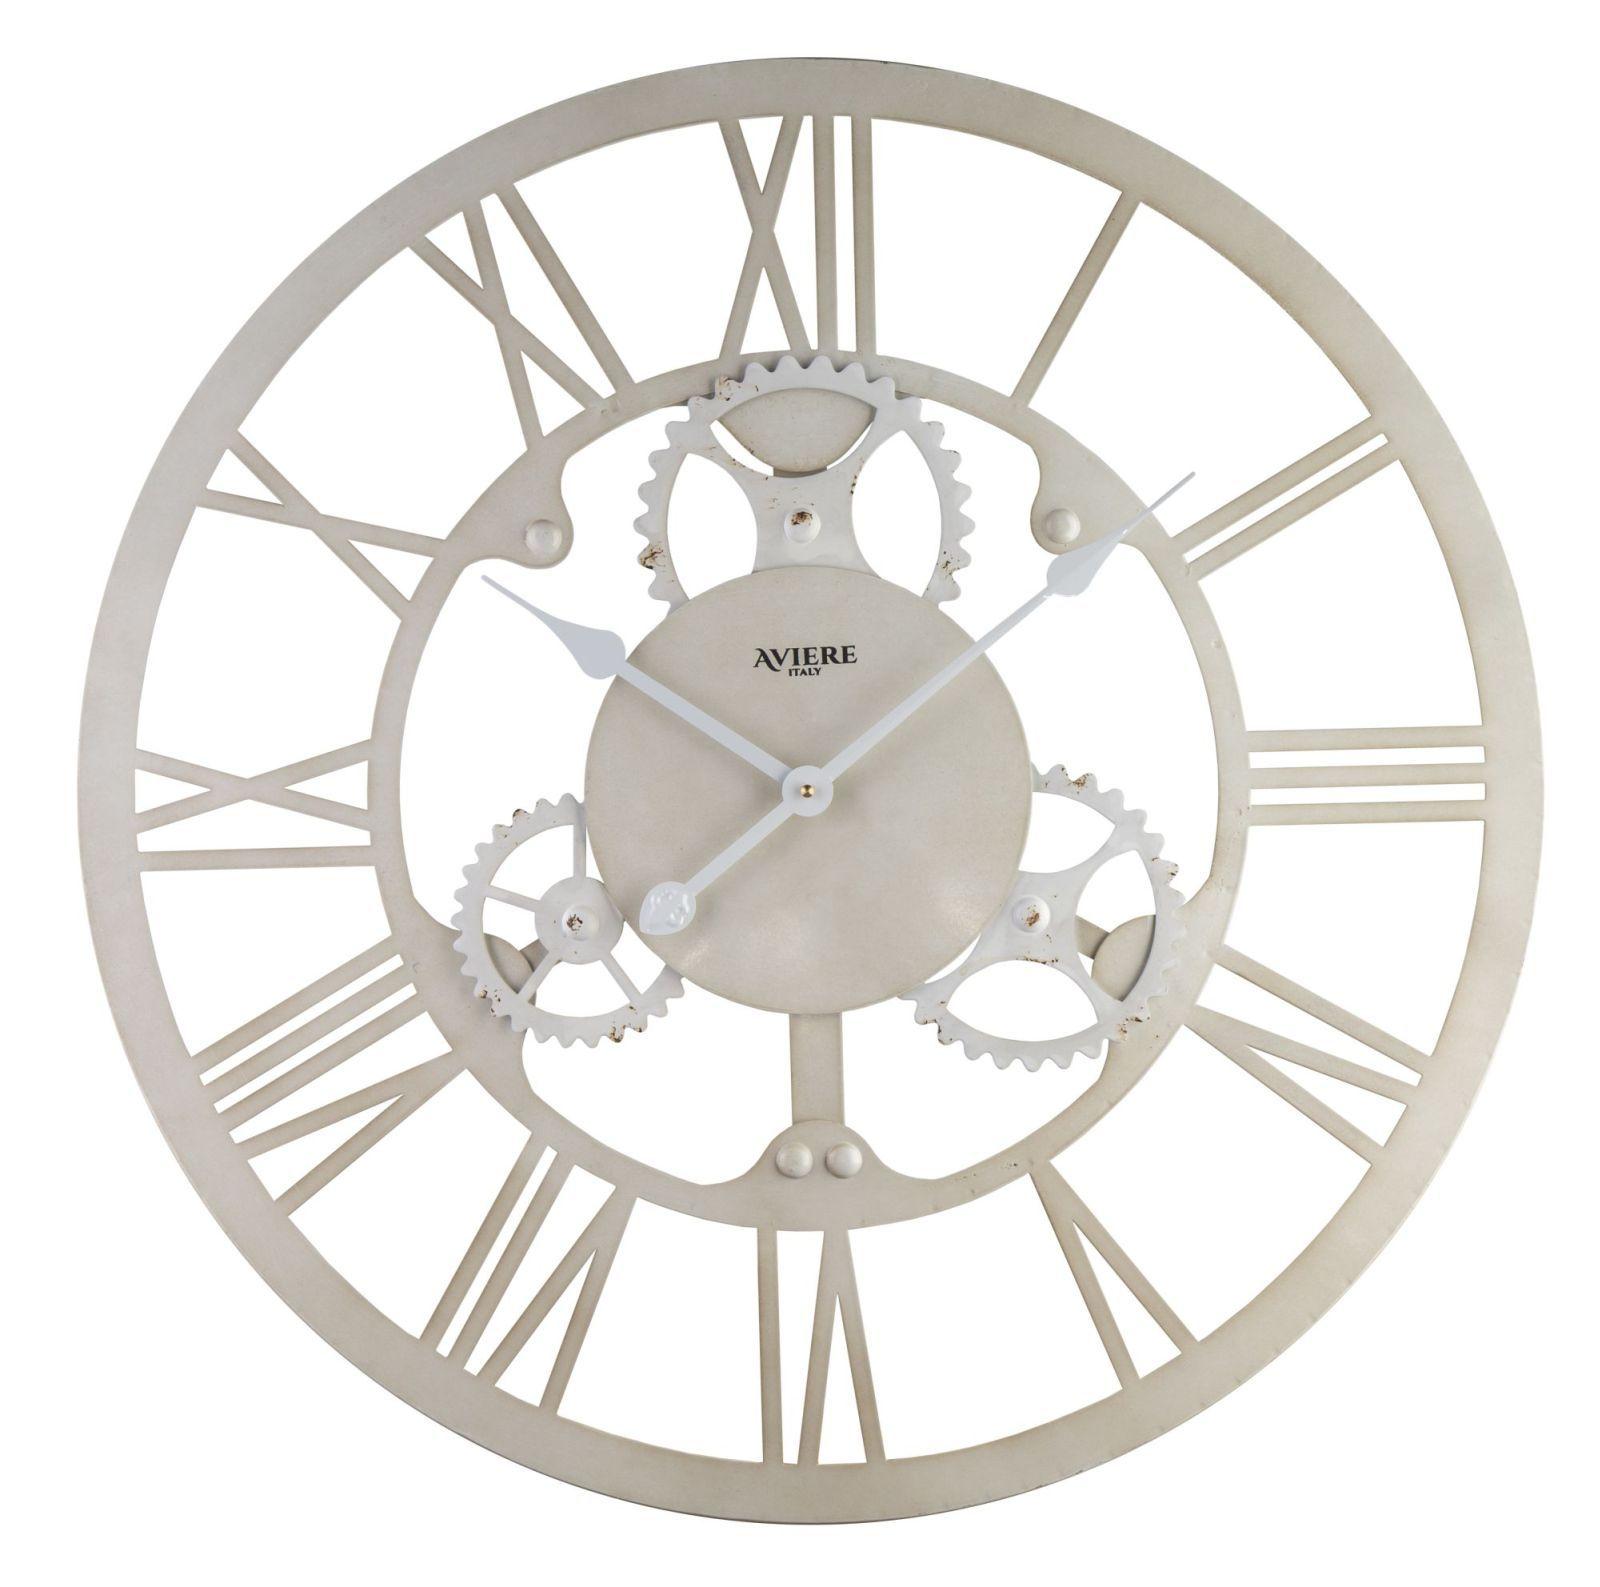 Круглые металлические часы. Aviere настенные часы. Настенные часы Aviere 25504. Настенные часы Aviere 27508. Часы настенные круглые большие.